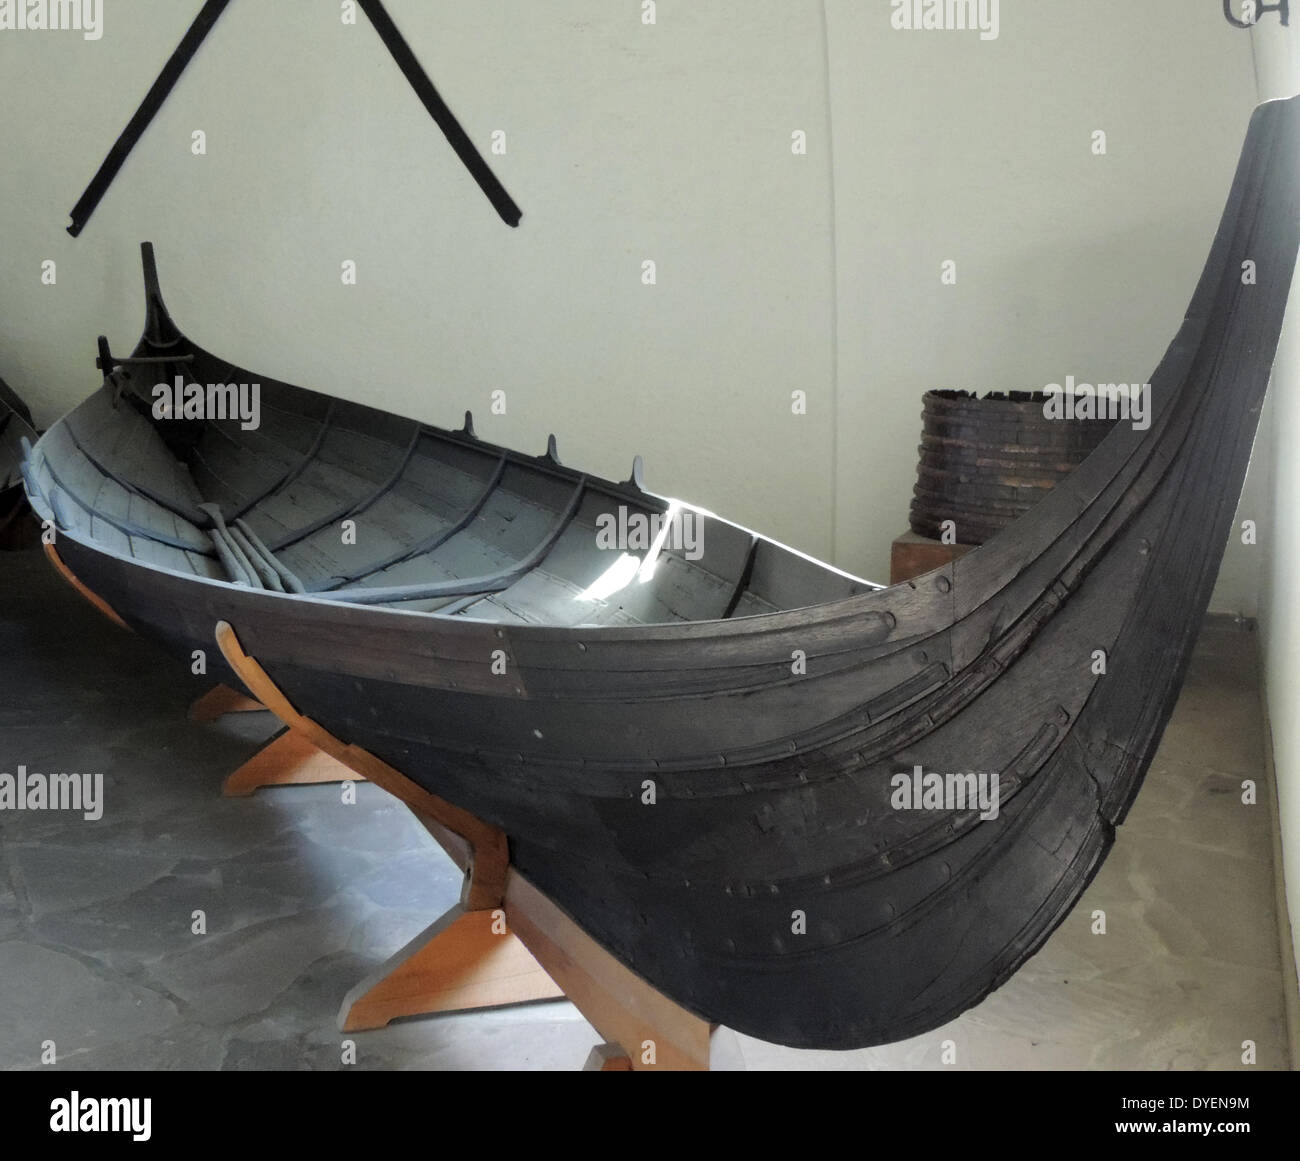 Kleinere Holz- Boot, so genannte gokstad kleines Boot, in der gokstad Schiffes gefunden. Aus der Zeit um 850 AD, das Schiff wurde 1880 ausgegraben. Das Schiff ist an der Viking Ship Museum, in Bygdøy angezeigt. Stockfoto